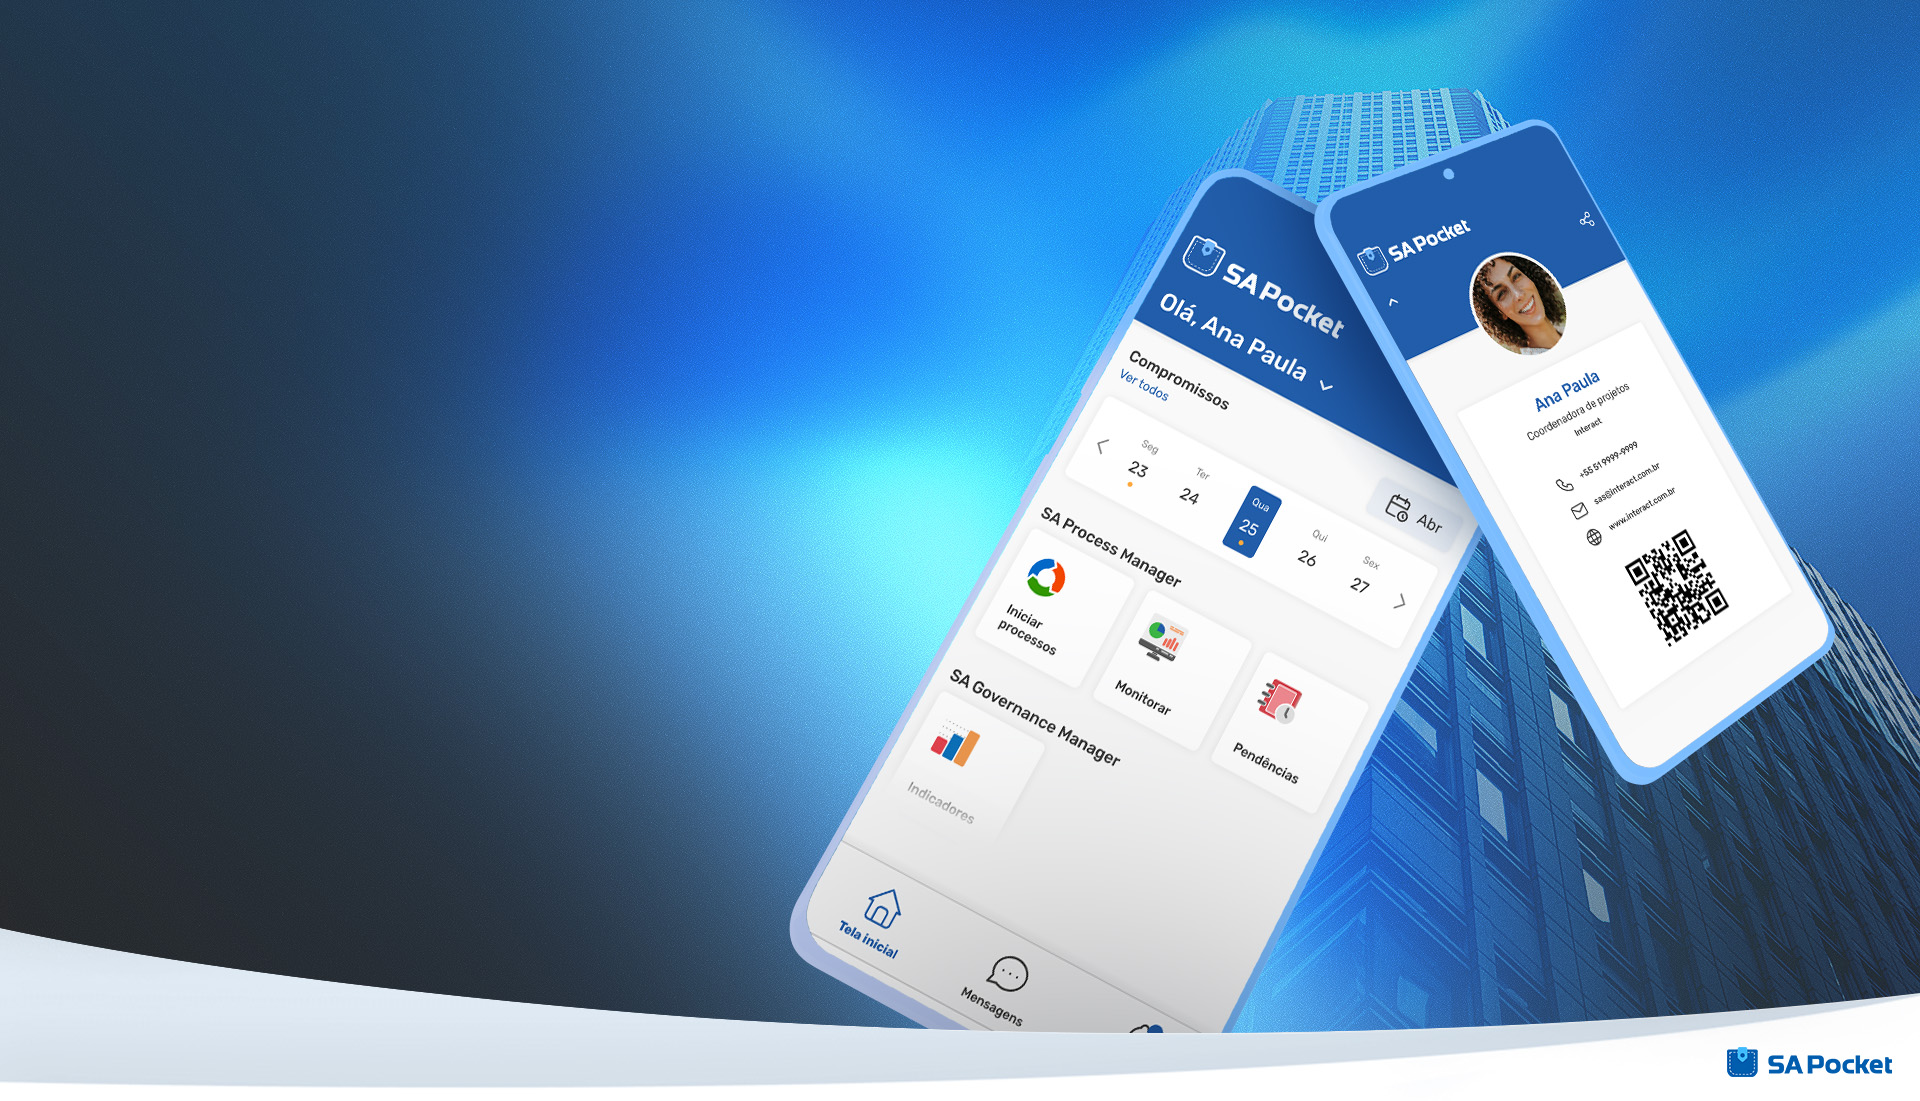 Conheça o SA Pocket, a nova versão mobile da Suite SA